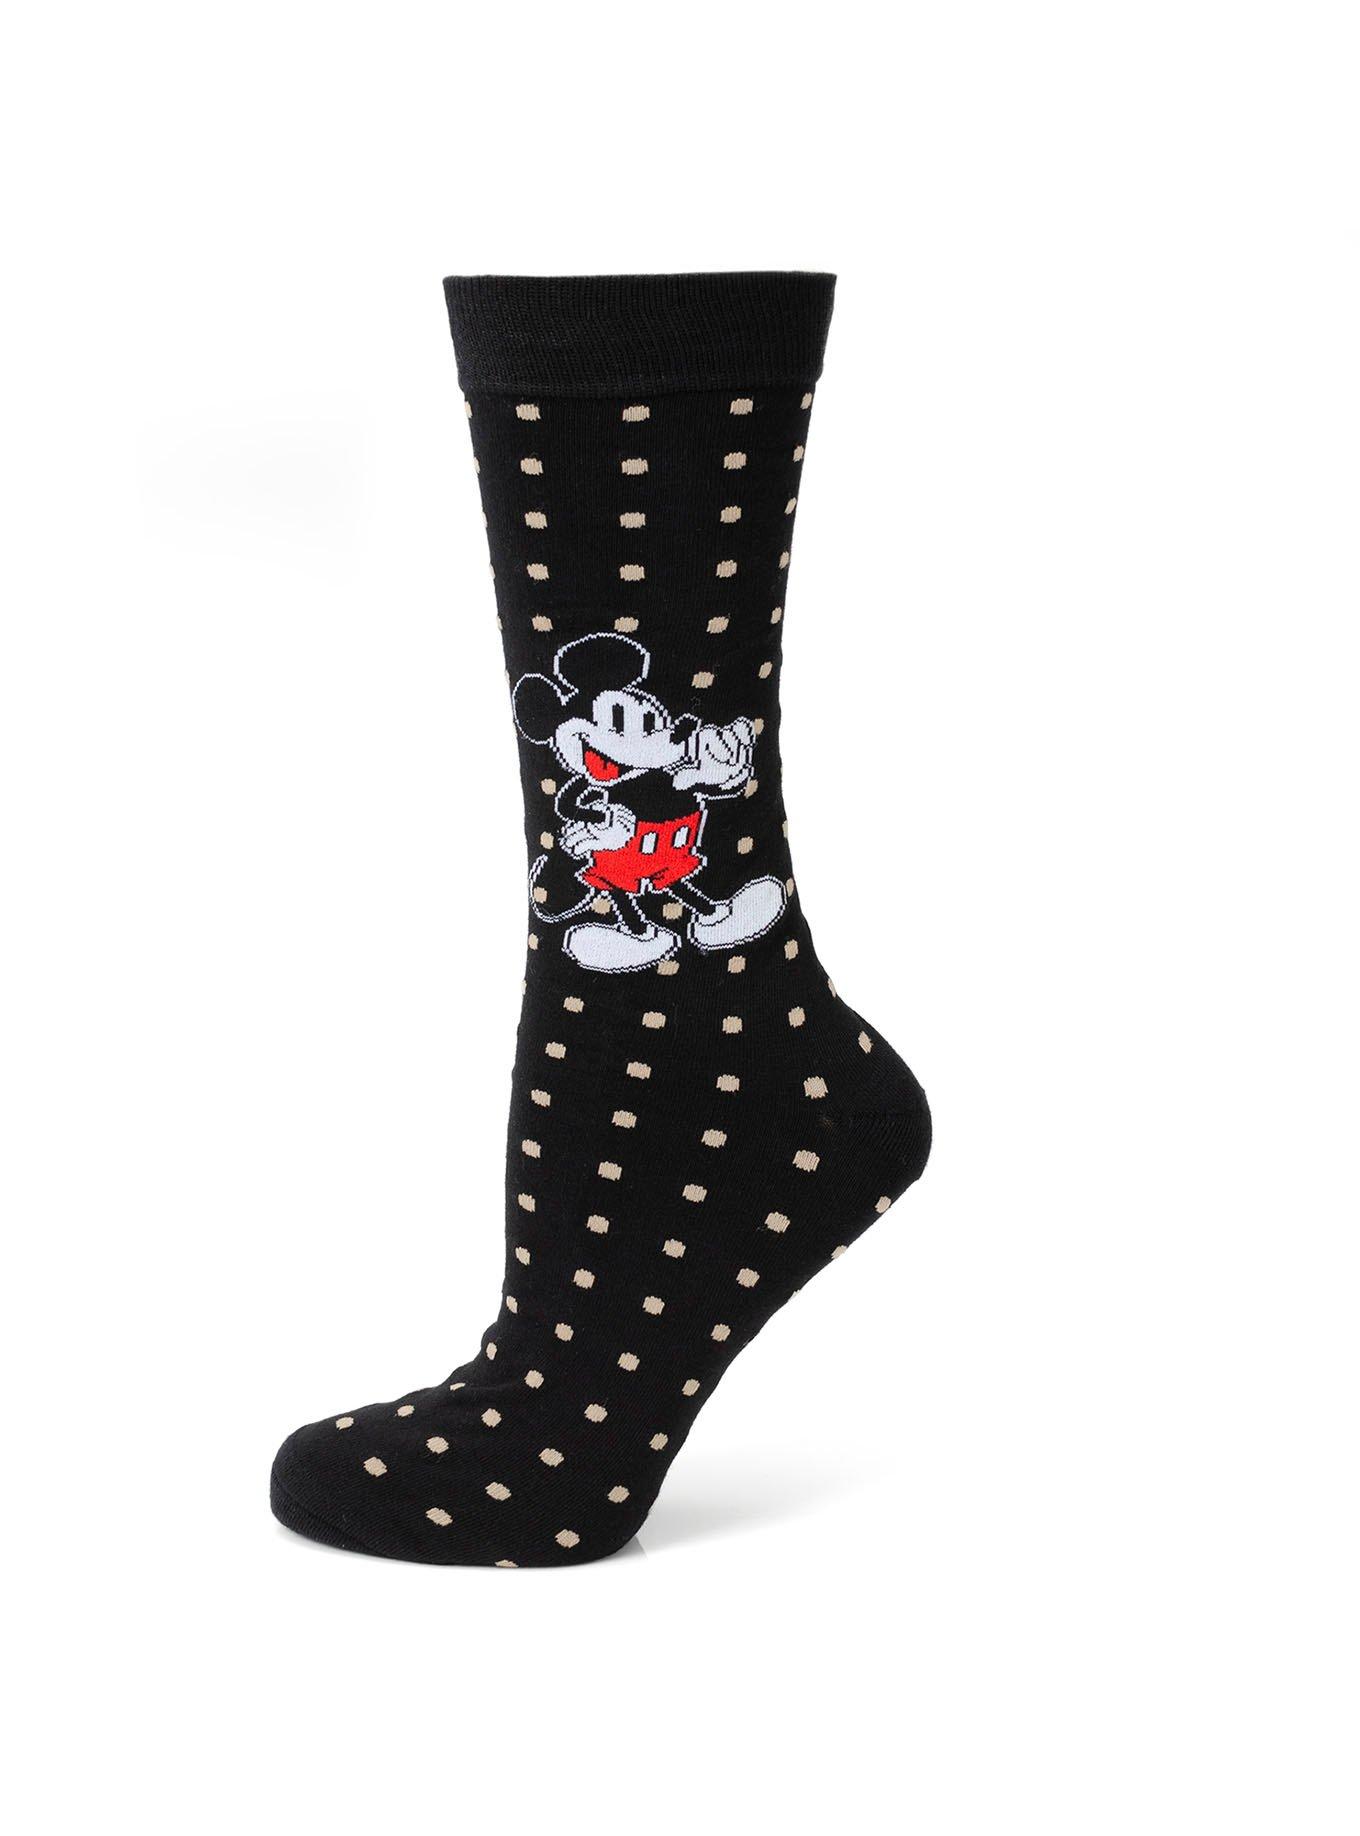 Disney Mickey Mouse Black Polka Dot Socks, , hi-res